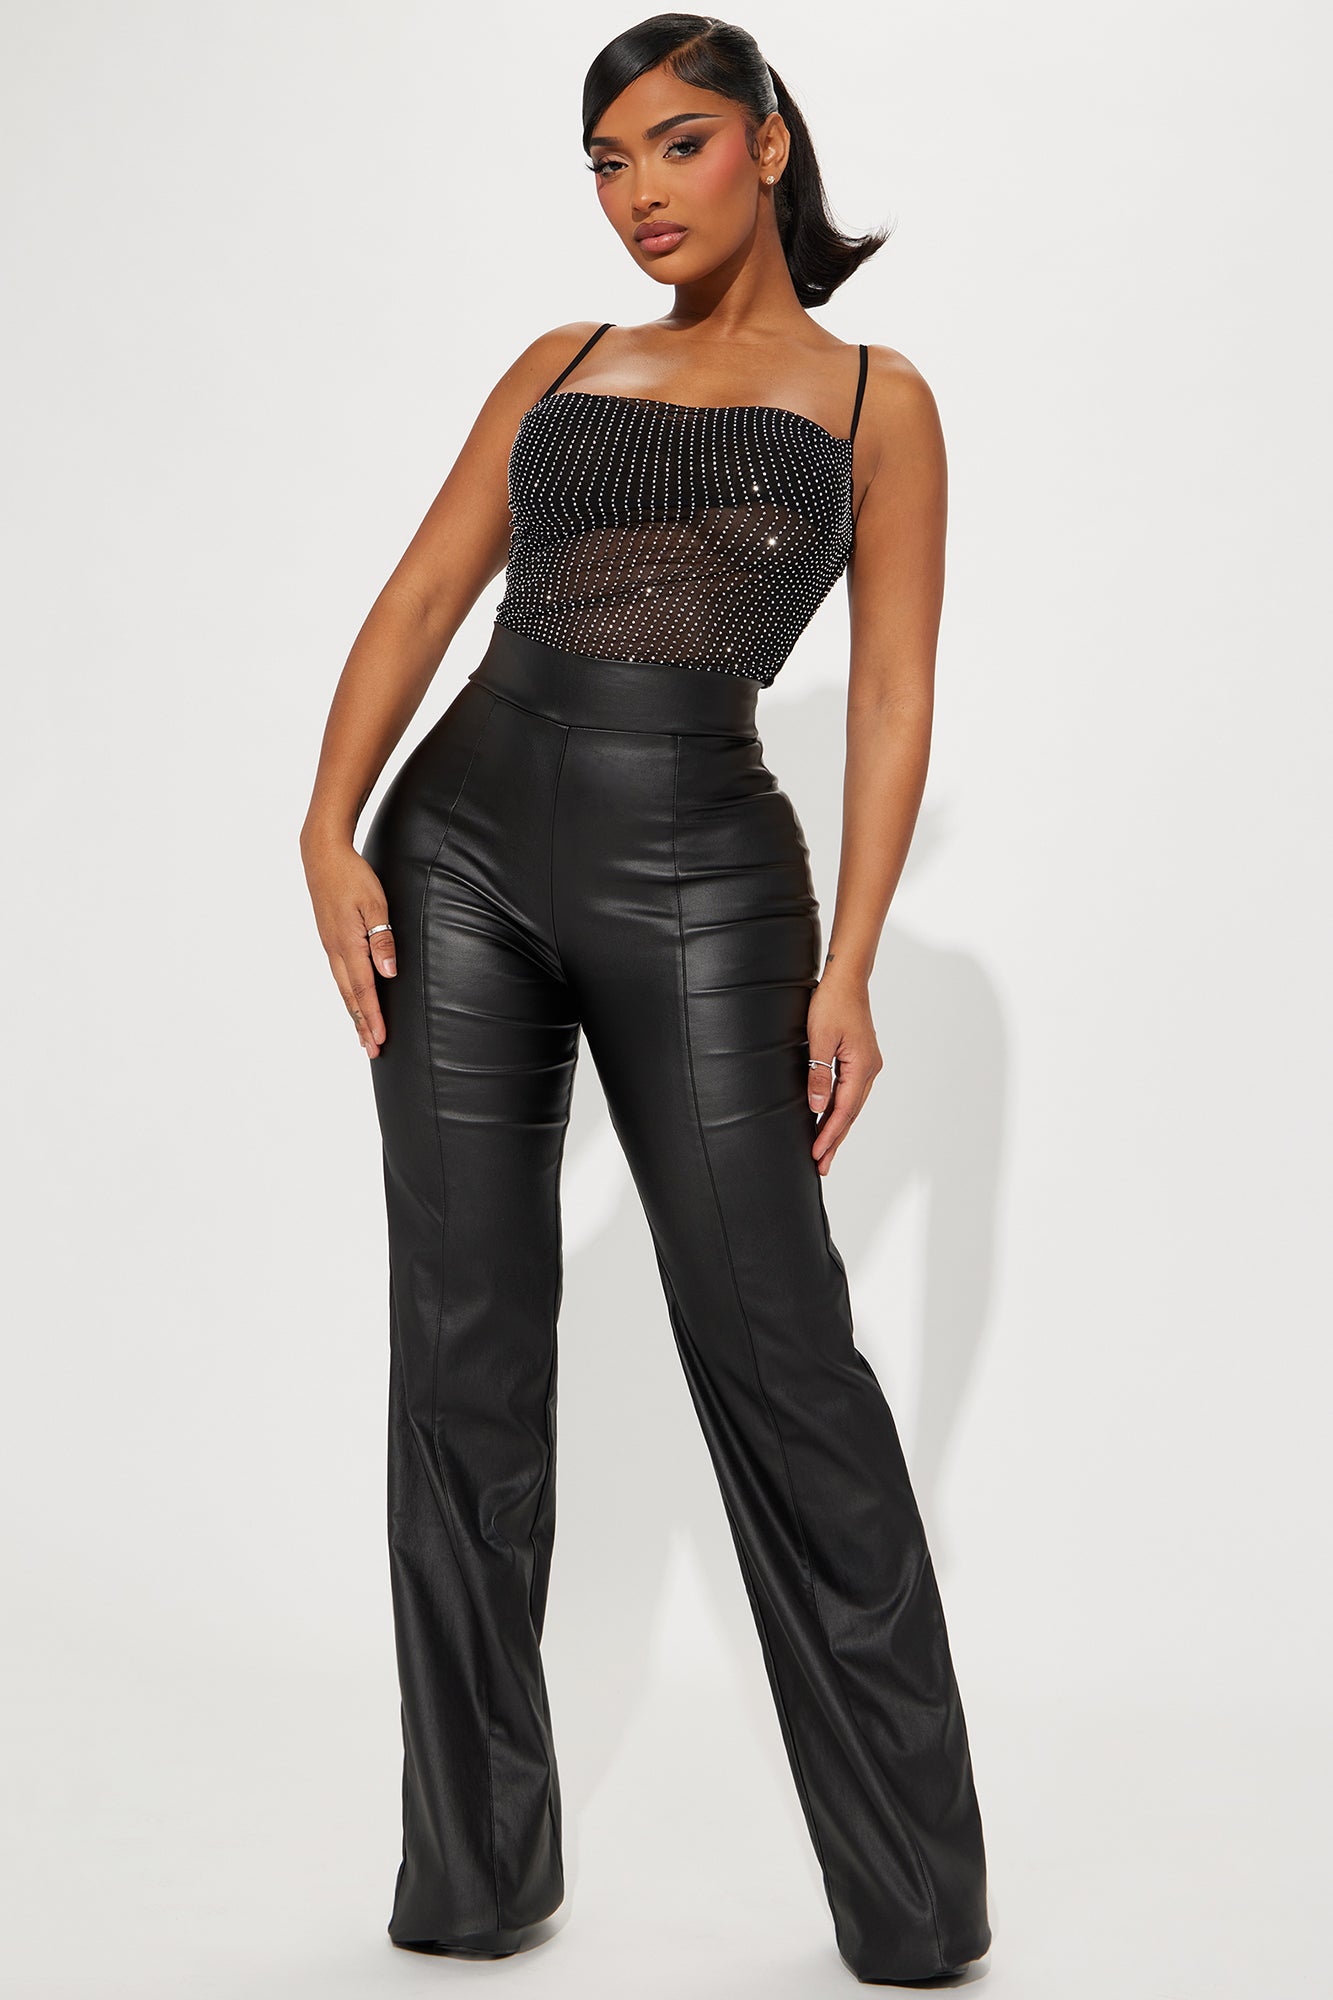 Tall Victoria High Waisted Dress Pants Faux Leather 37 - Black, Fashion  Nova, Pants